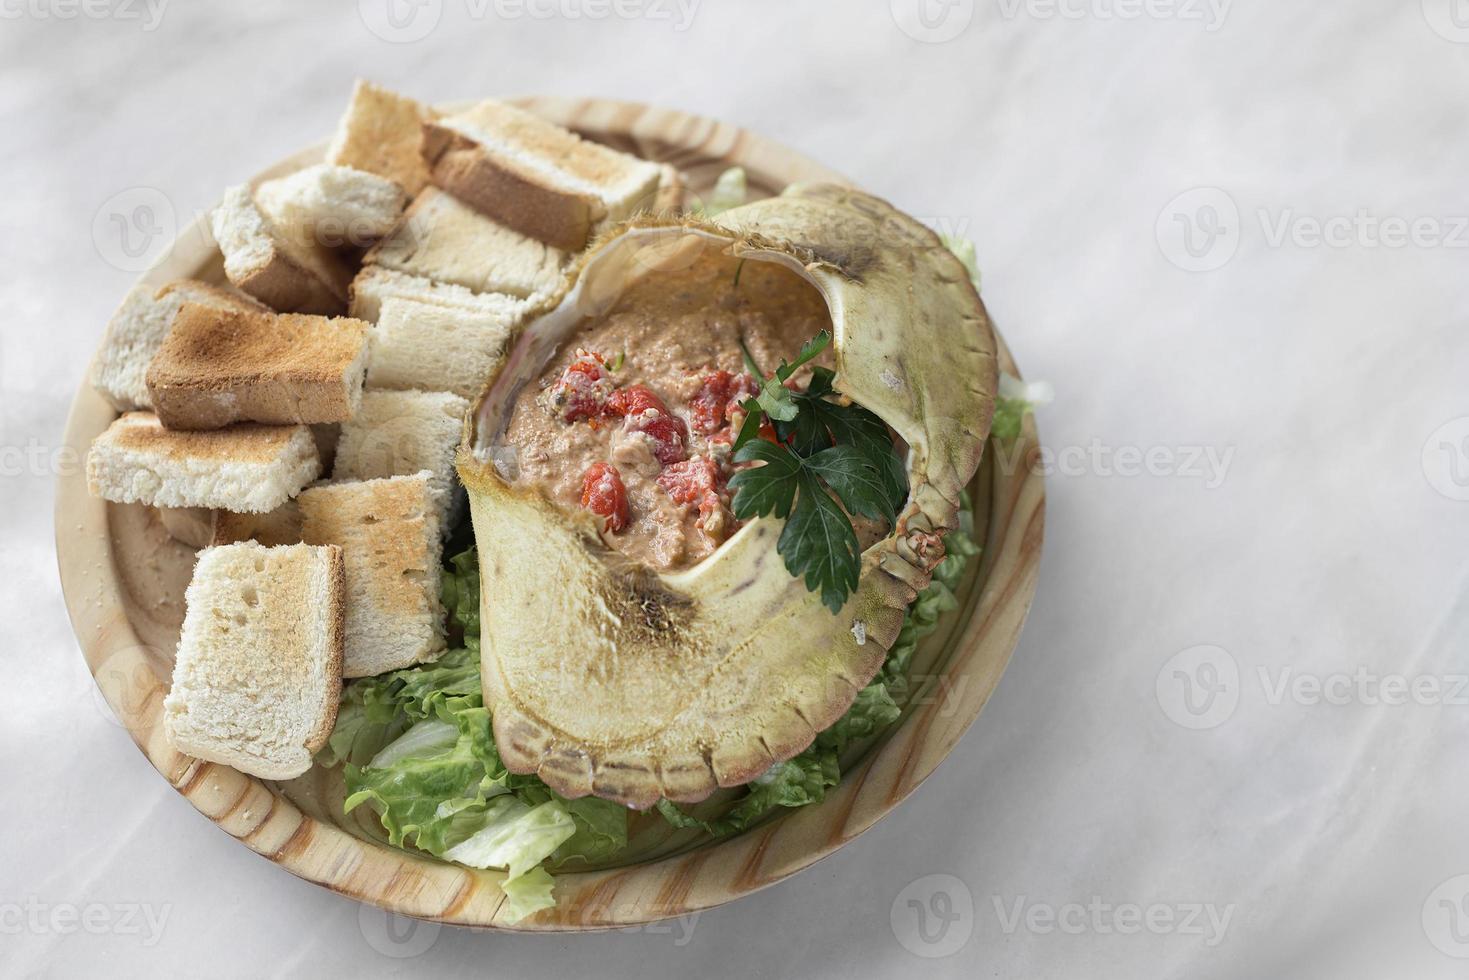 La viande de crabe portugaise mayonnaise mousse tapas de fruits de mer au restaurant de lisbonne photo